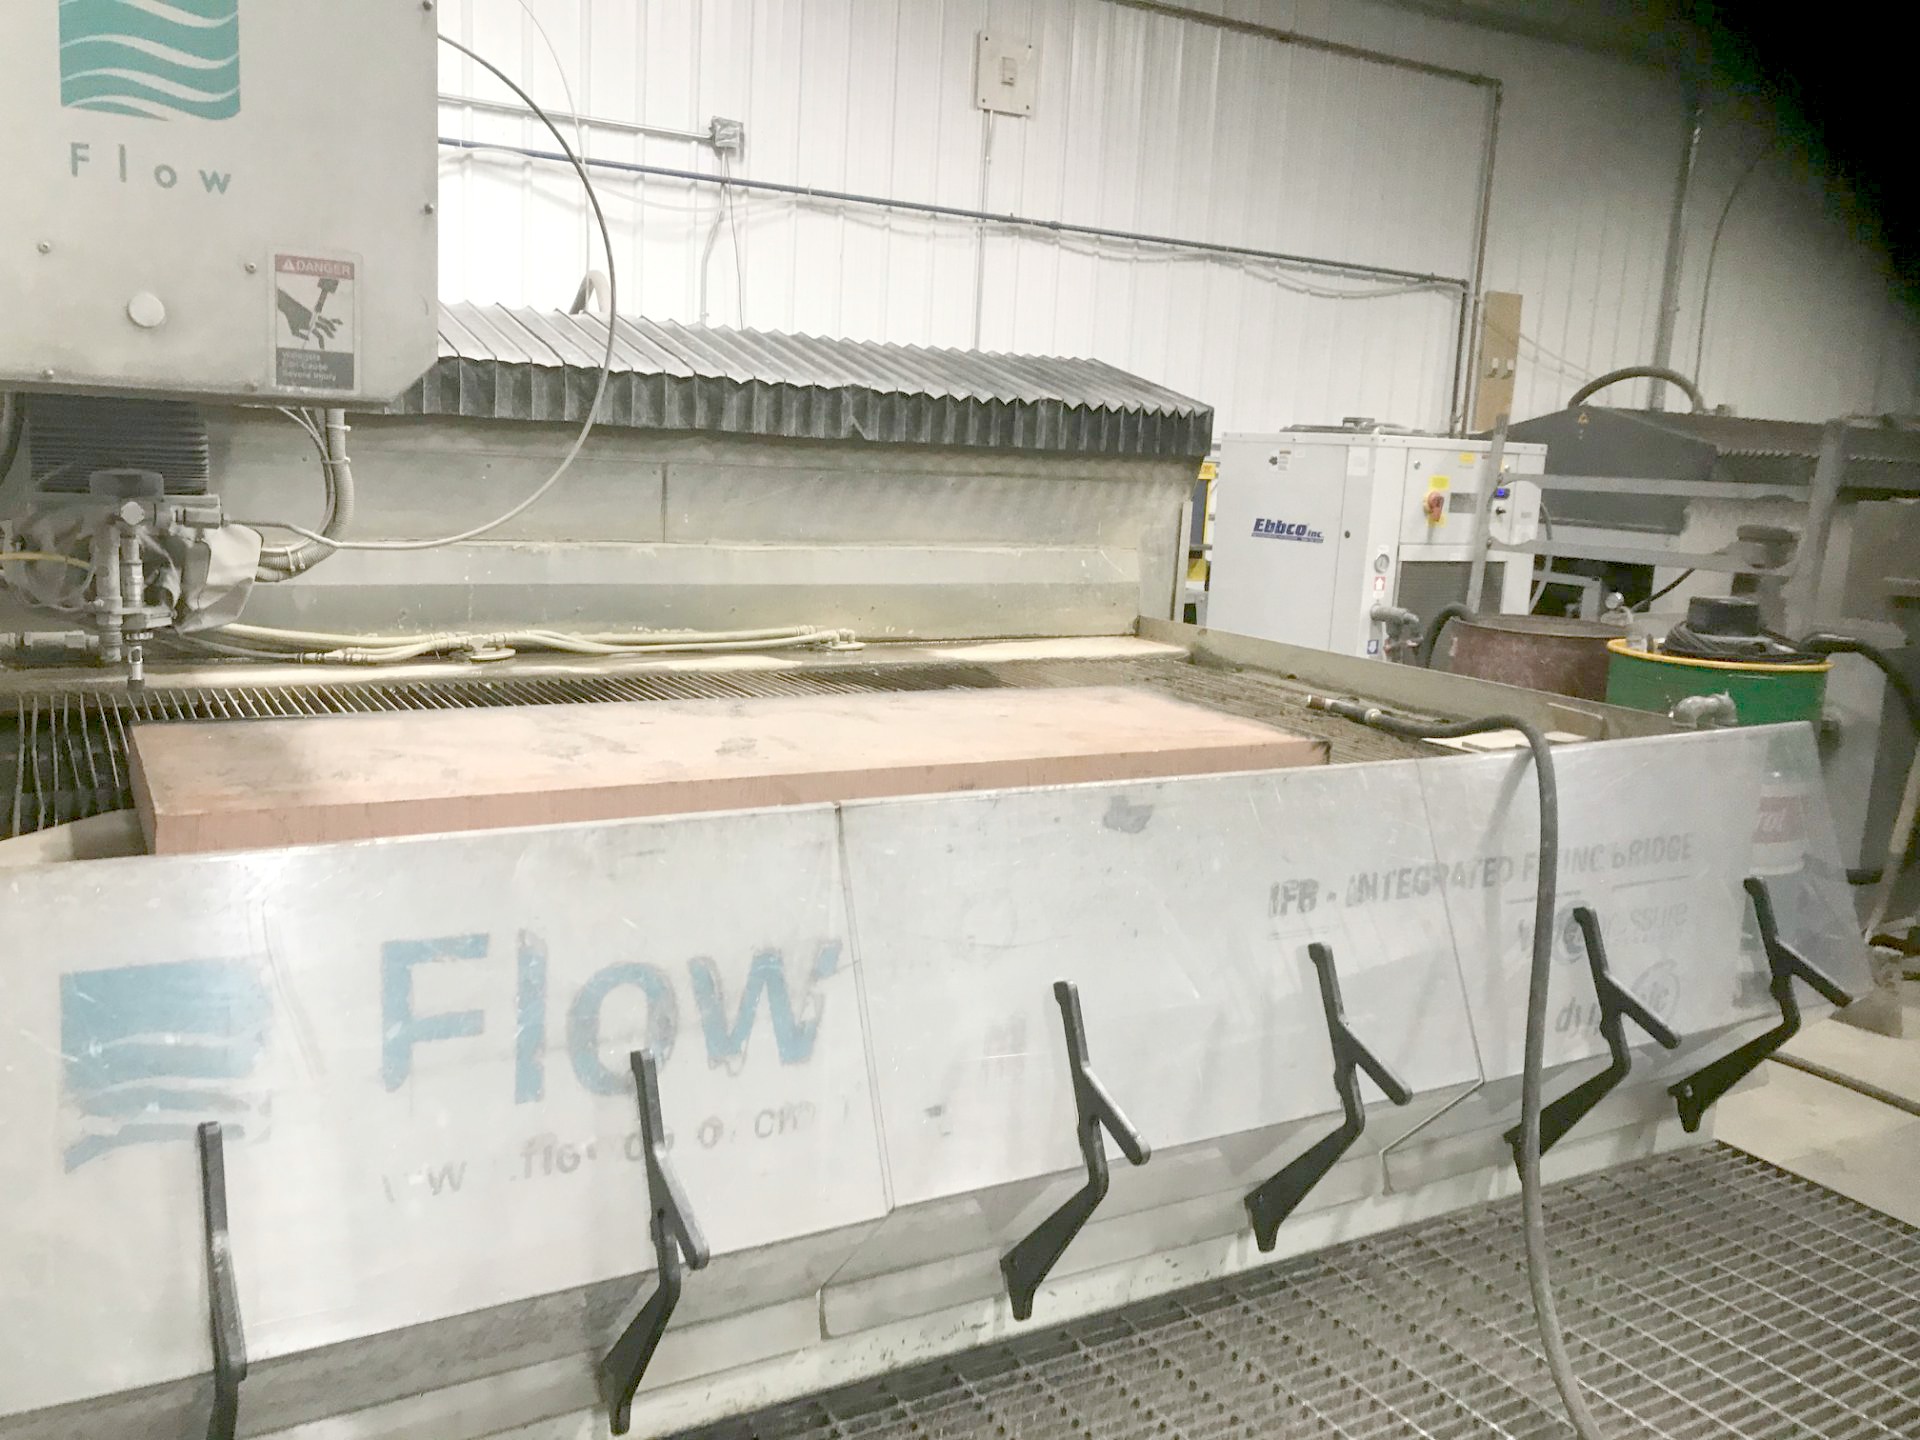 Flow IFB 4800 Dynamic Head CNC Waterjet Machine (Used) Item # UE-082820E (Arizona)